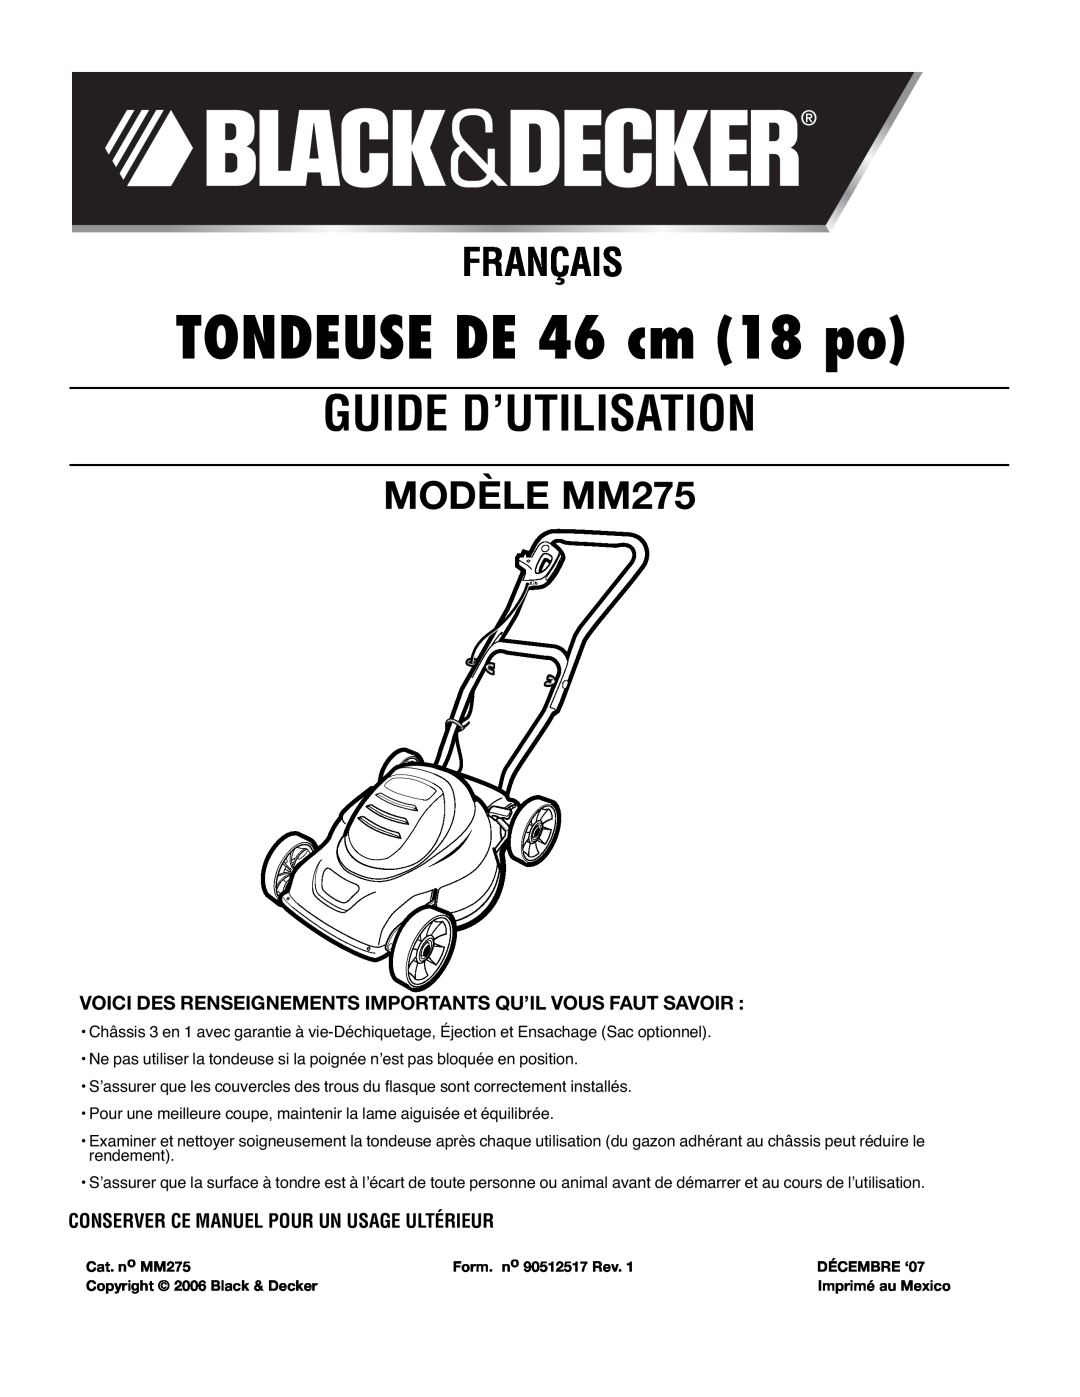 Black & Decker mm275 instruction manual TONDEUSE DE 46 cm 18 po, Guide D’Utilisation, Français, MODÈLE MM275 